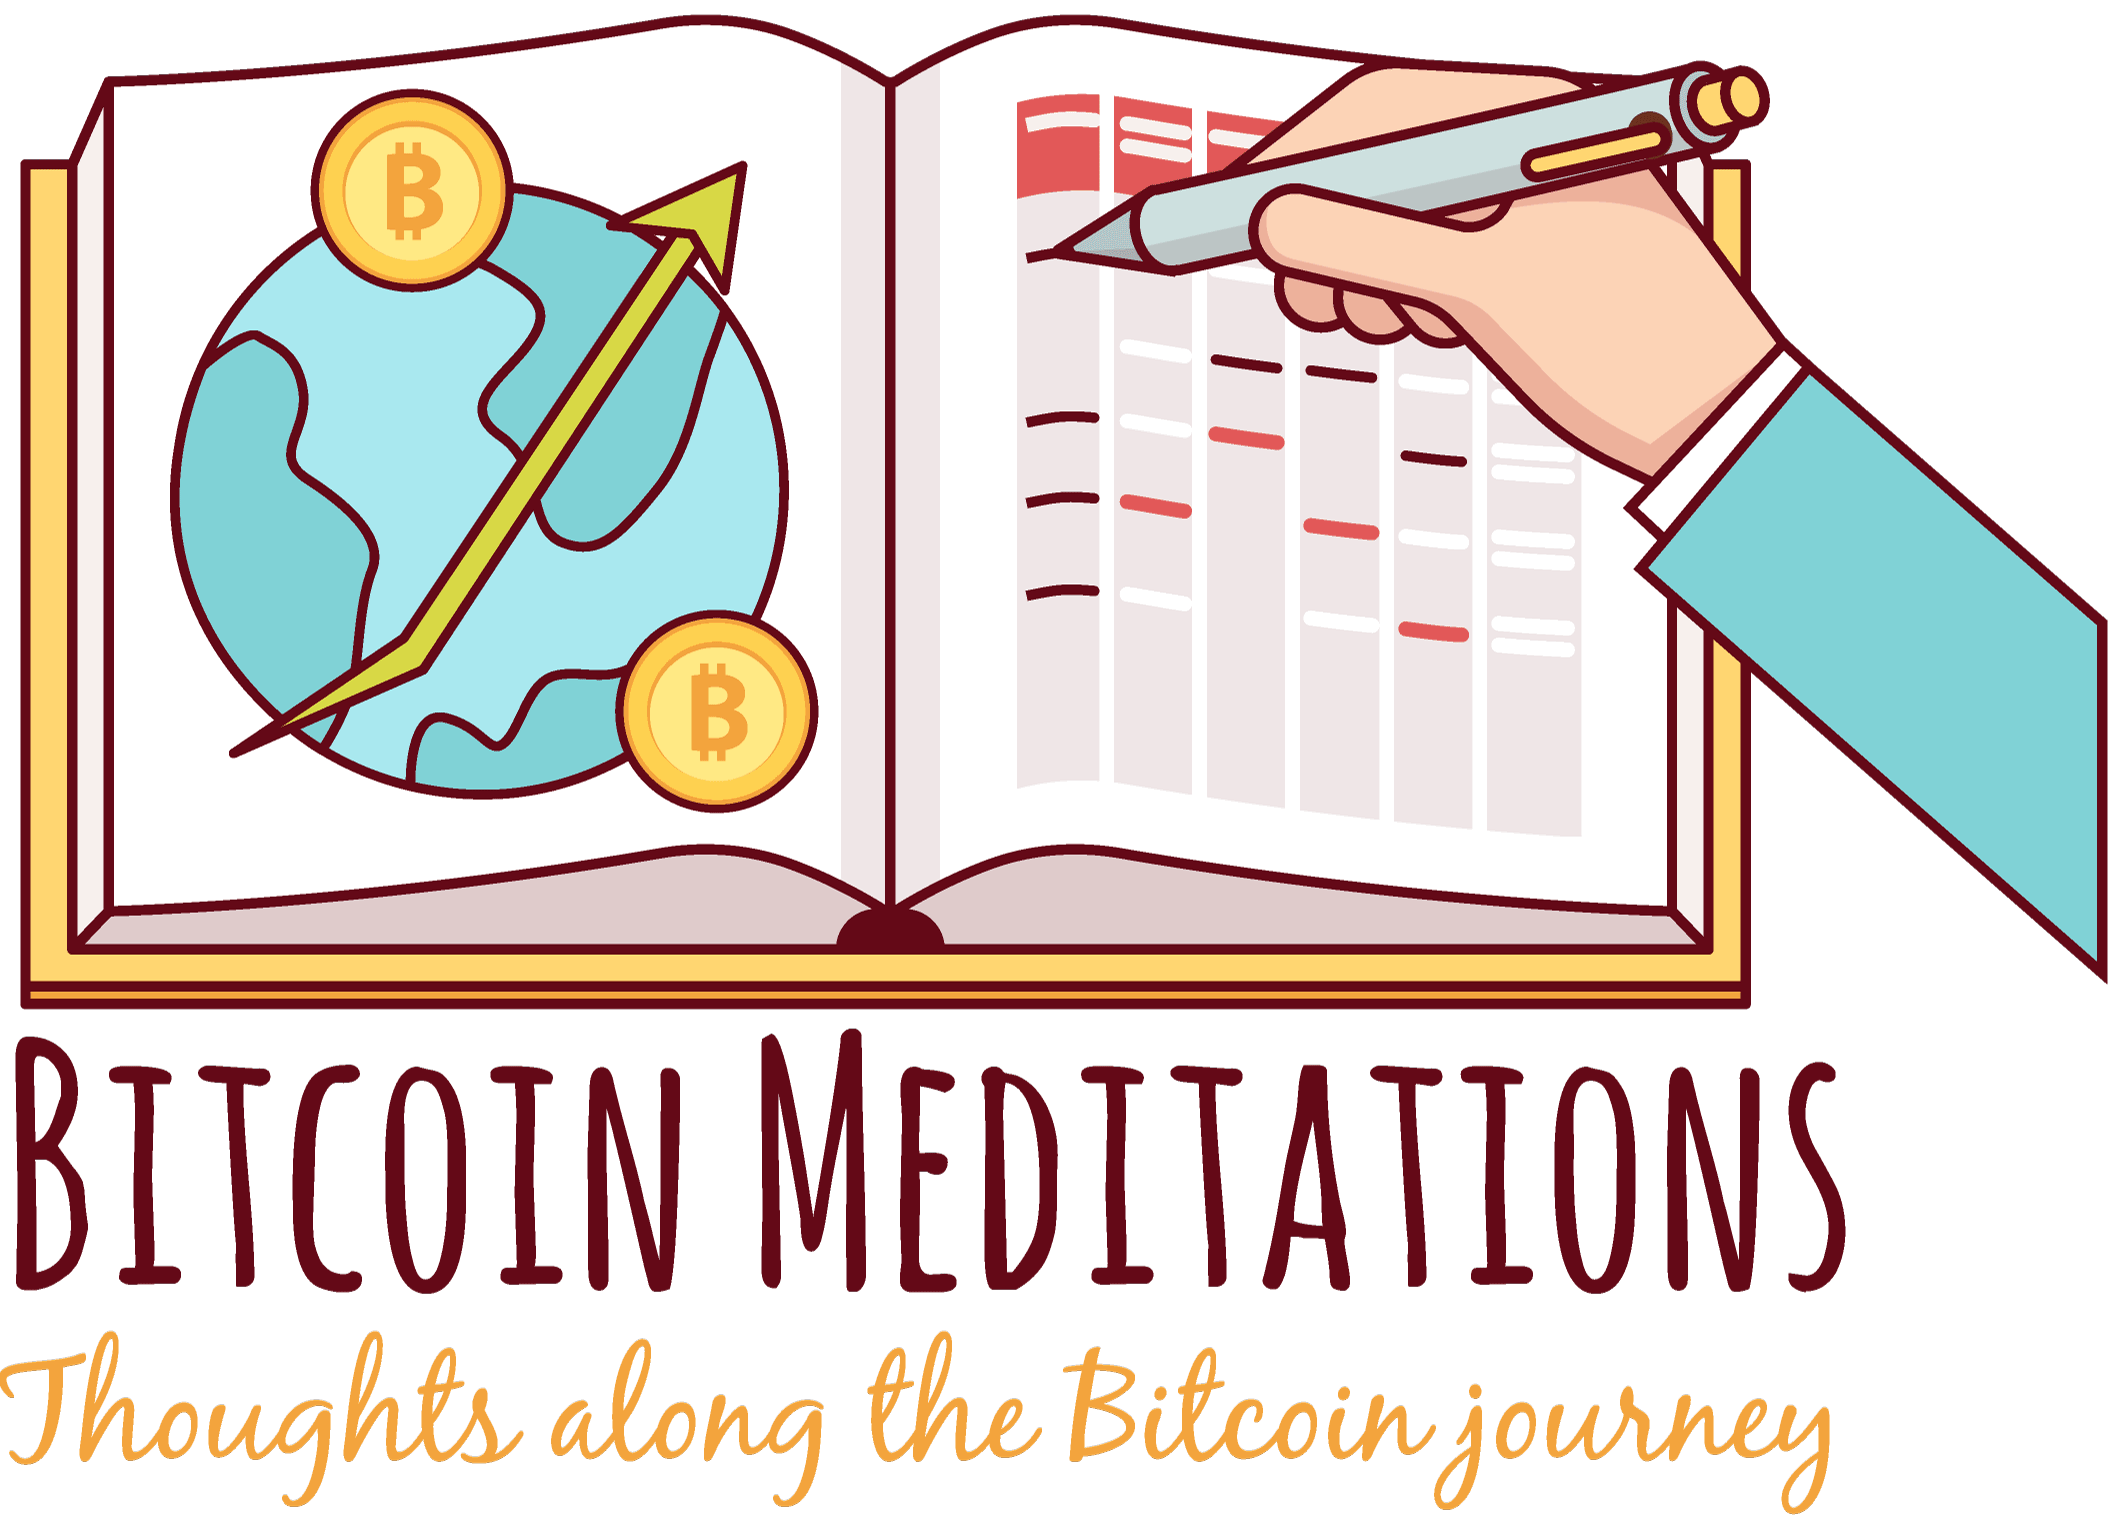 Bitcoin Meditations